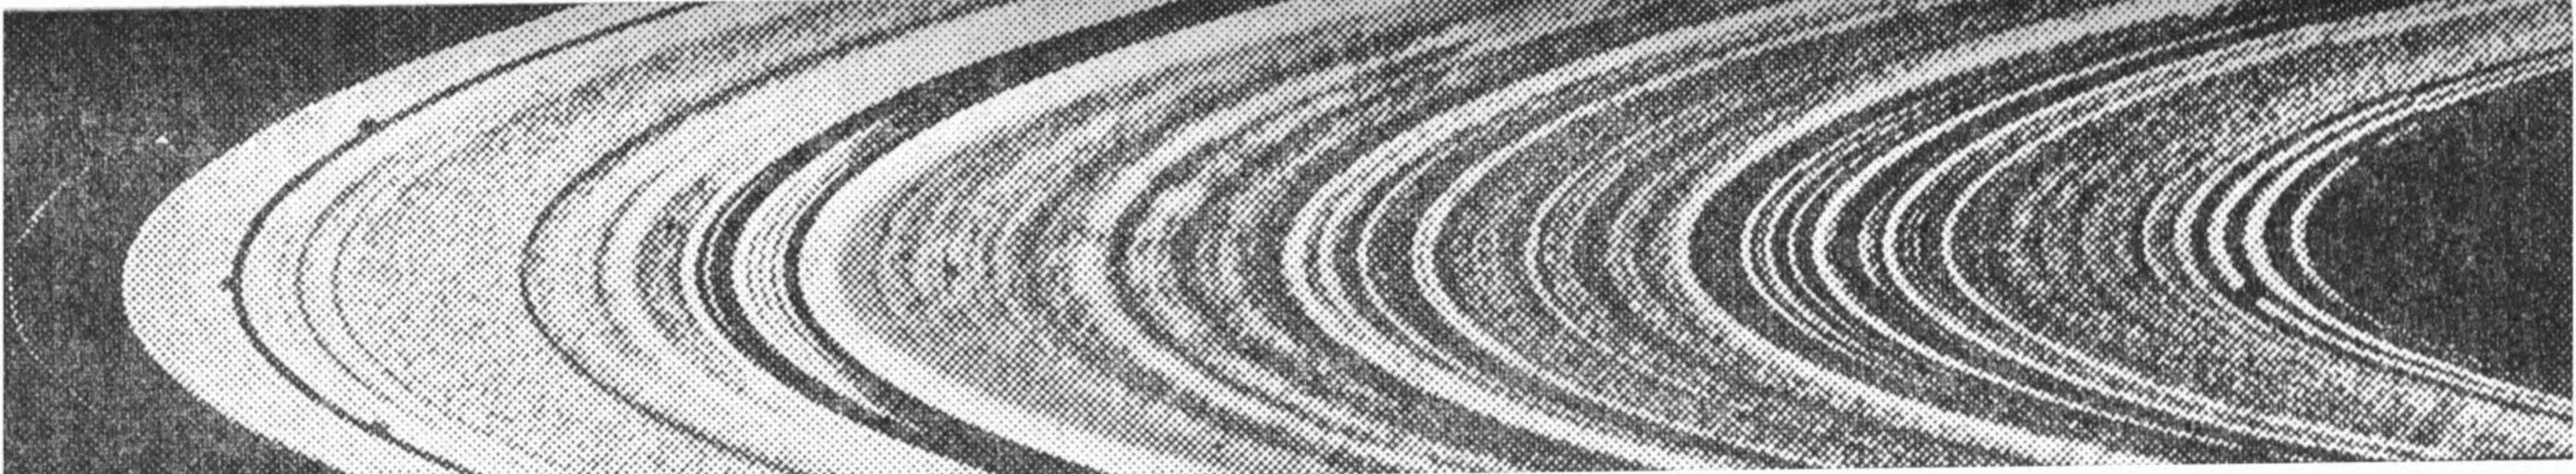 Рис. 5. Тонкая структура колец Сатурна, обнаруженная в результате полета космических станций «Вояджер»